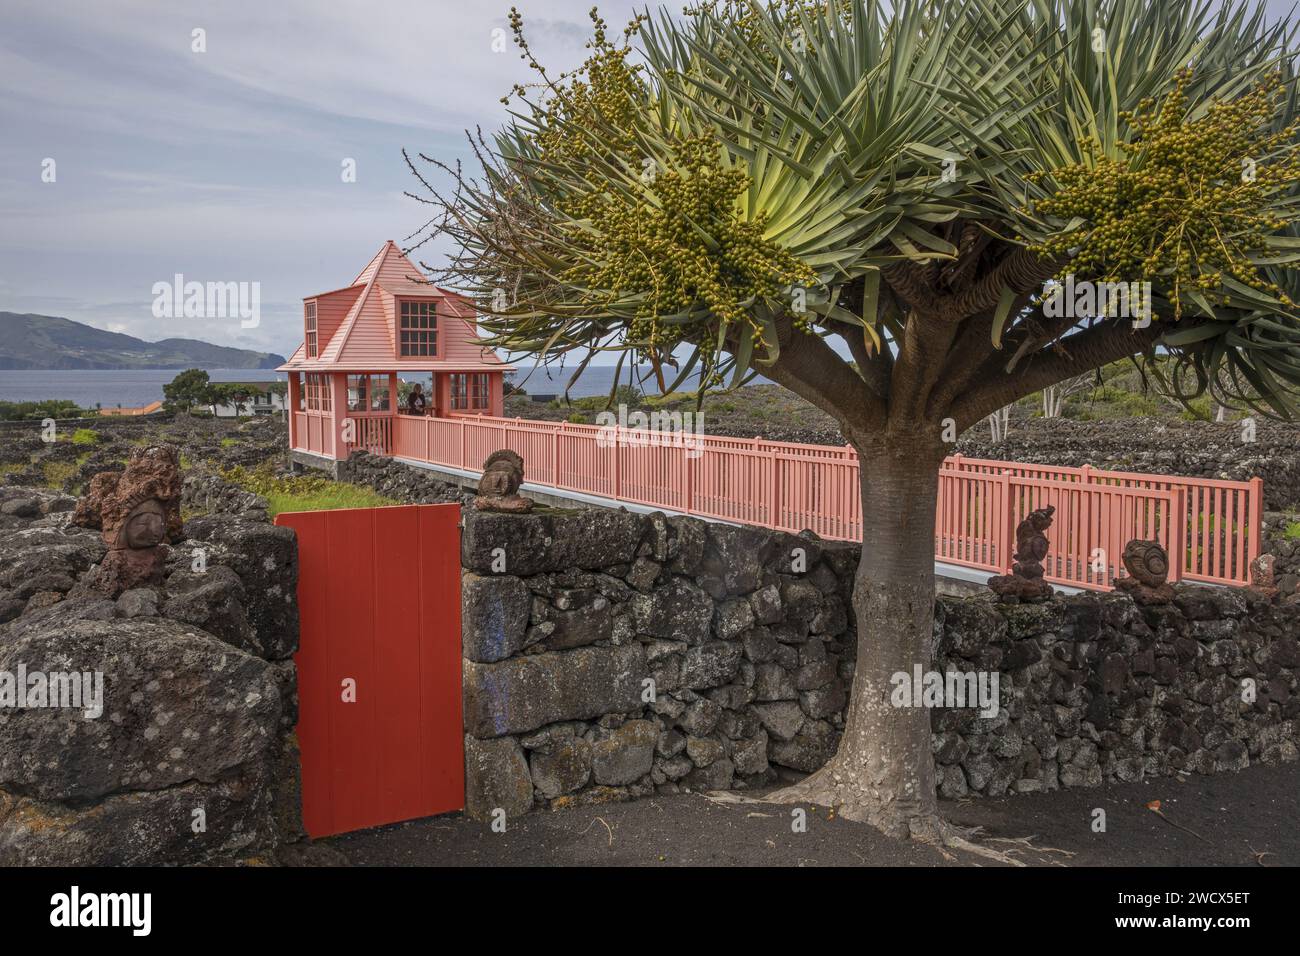 Portugal, archipiélago de las Azores, isla del Pico, museo del vino, dragón frente a un pabellón rojo situado en el centro de los viñedos rodeado de paredes de piedra de lava, frente al océano Foto de stock